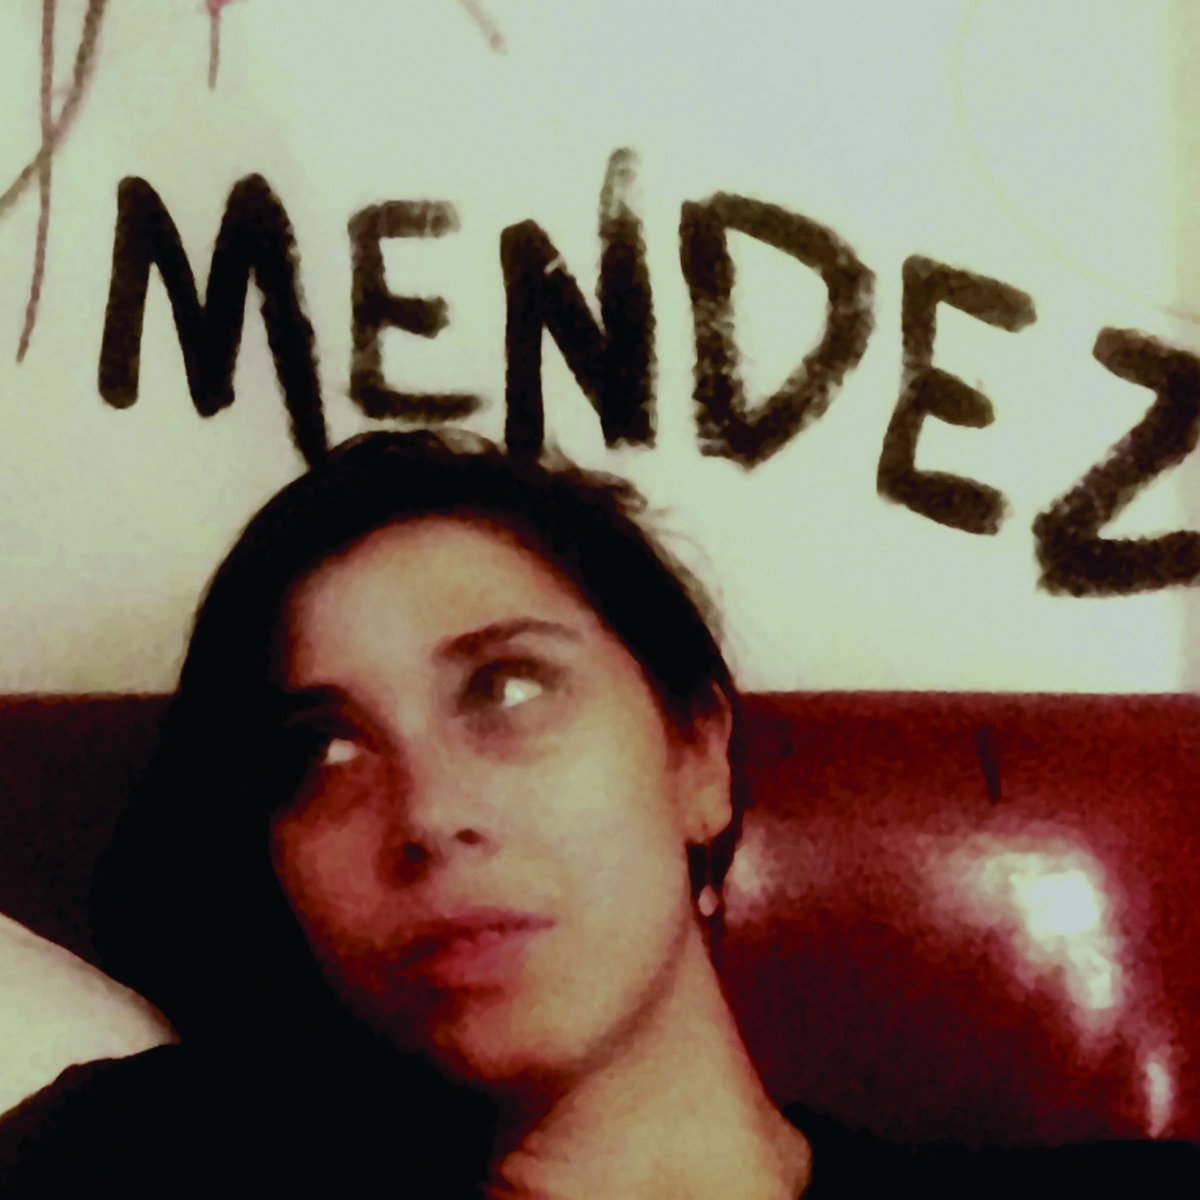 Mendez -/ photo